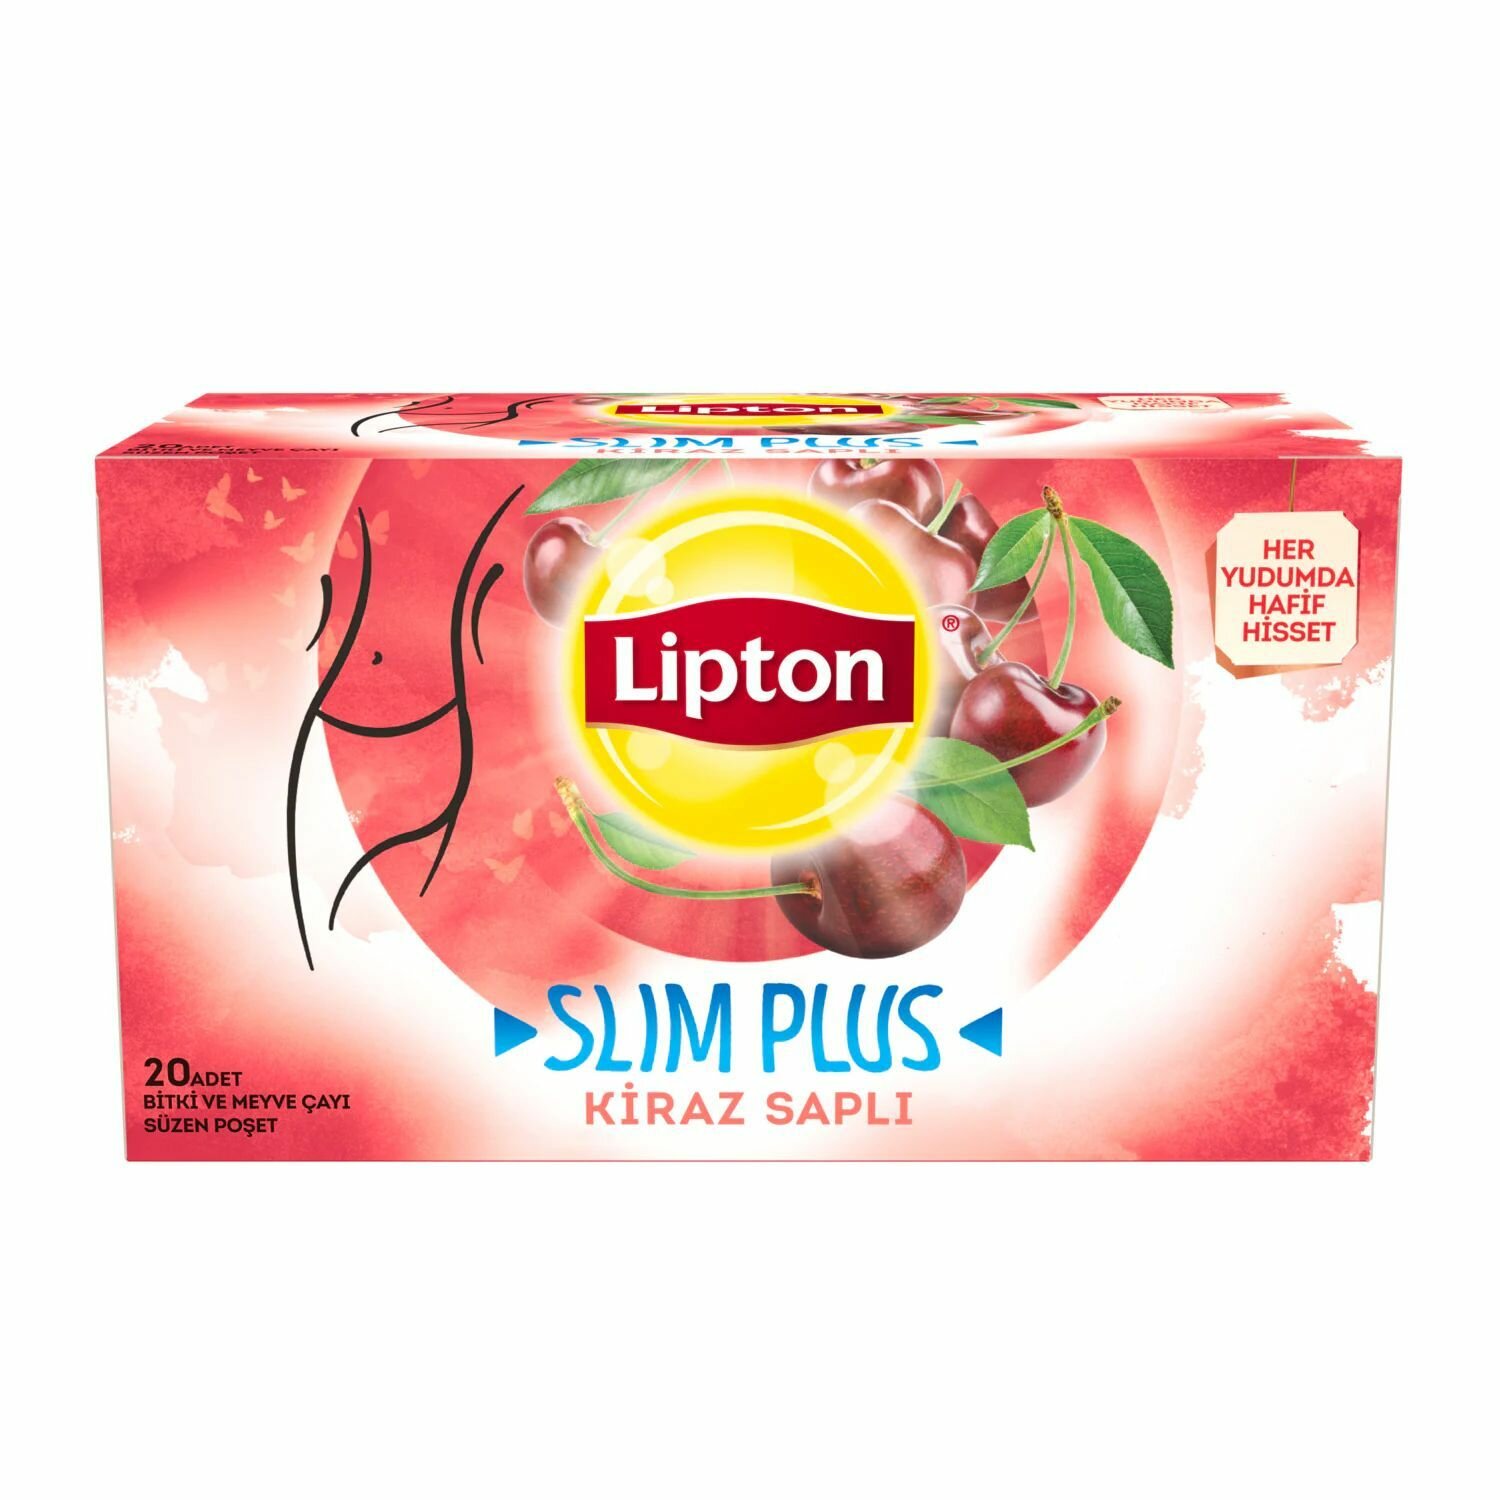 Lipton Slim Plus Вишневый чай в пакетиках (Липтон Слим плюс Kiraz Sapli)